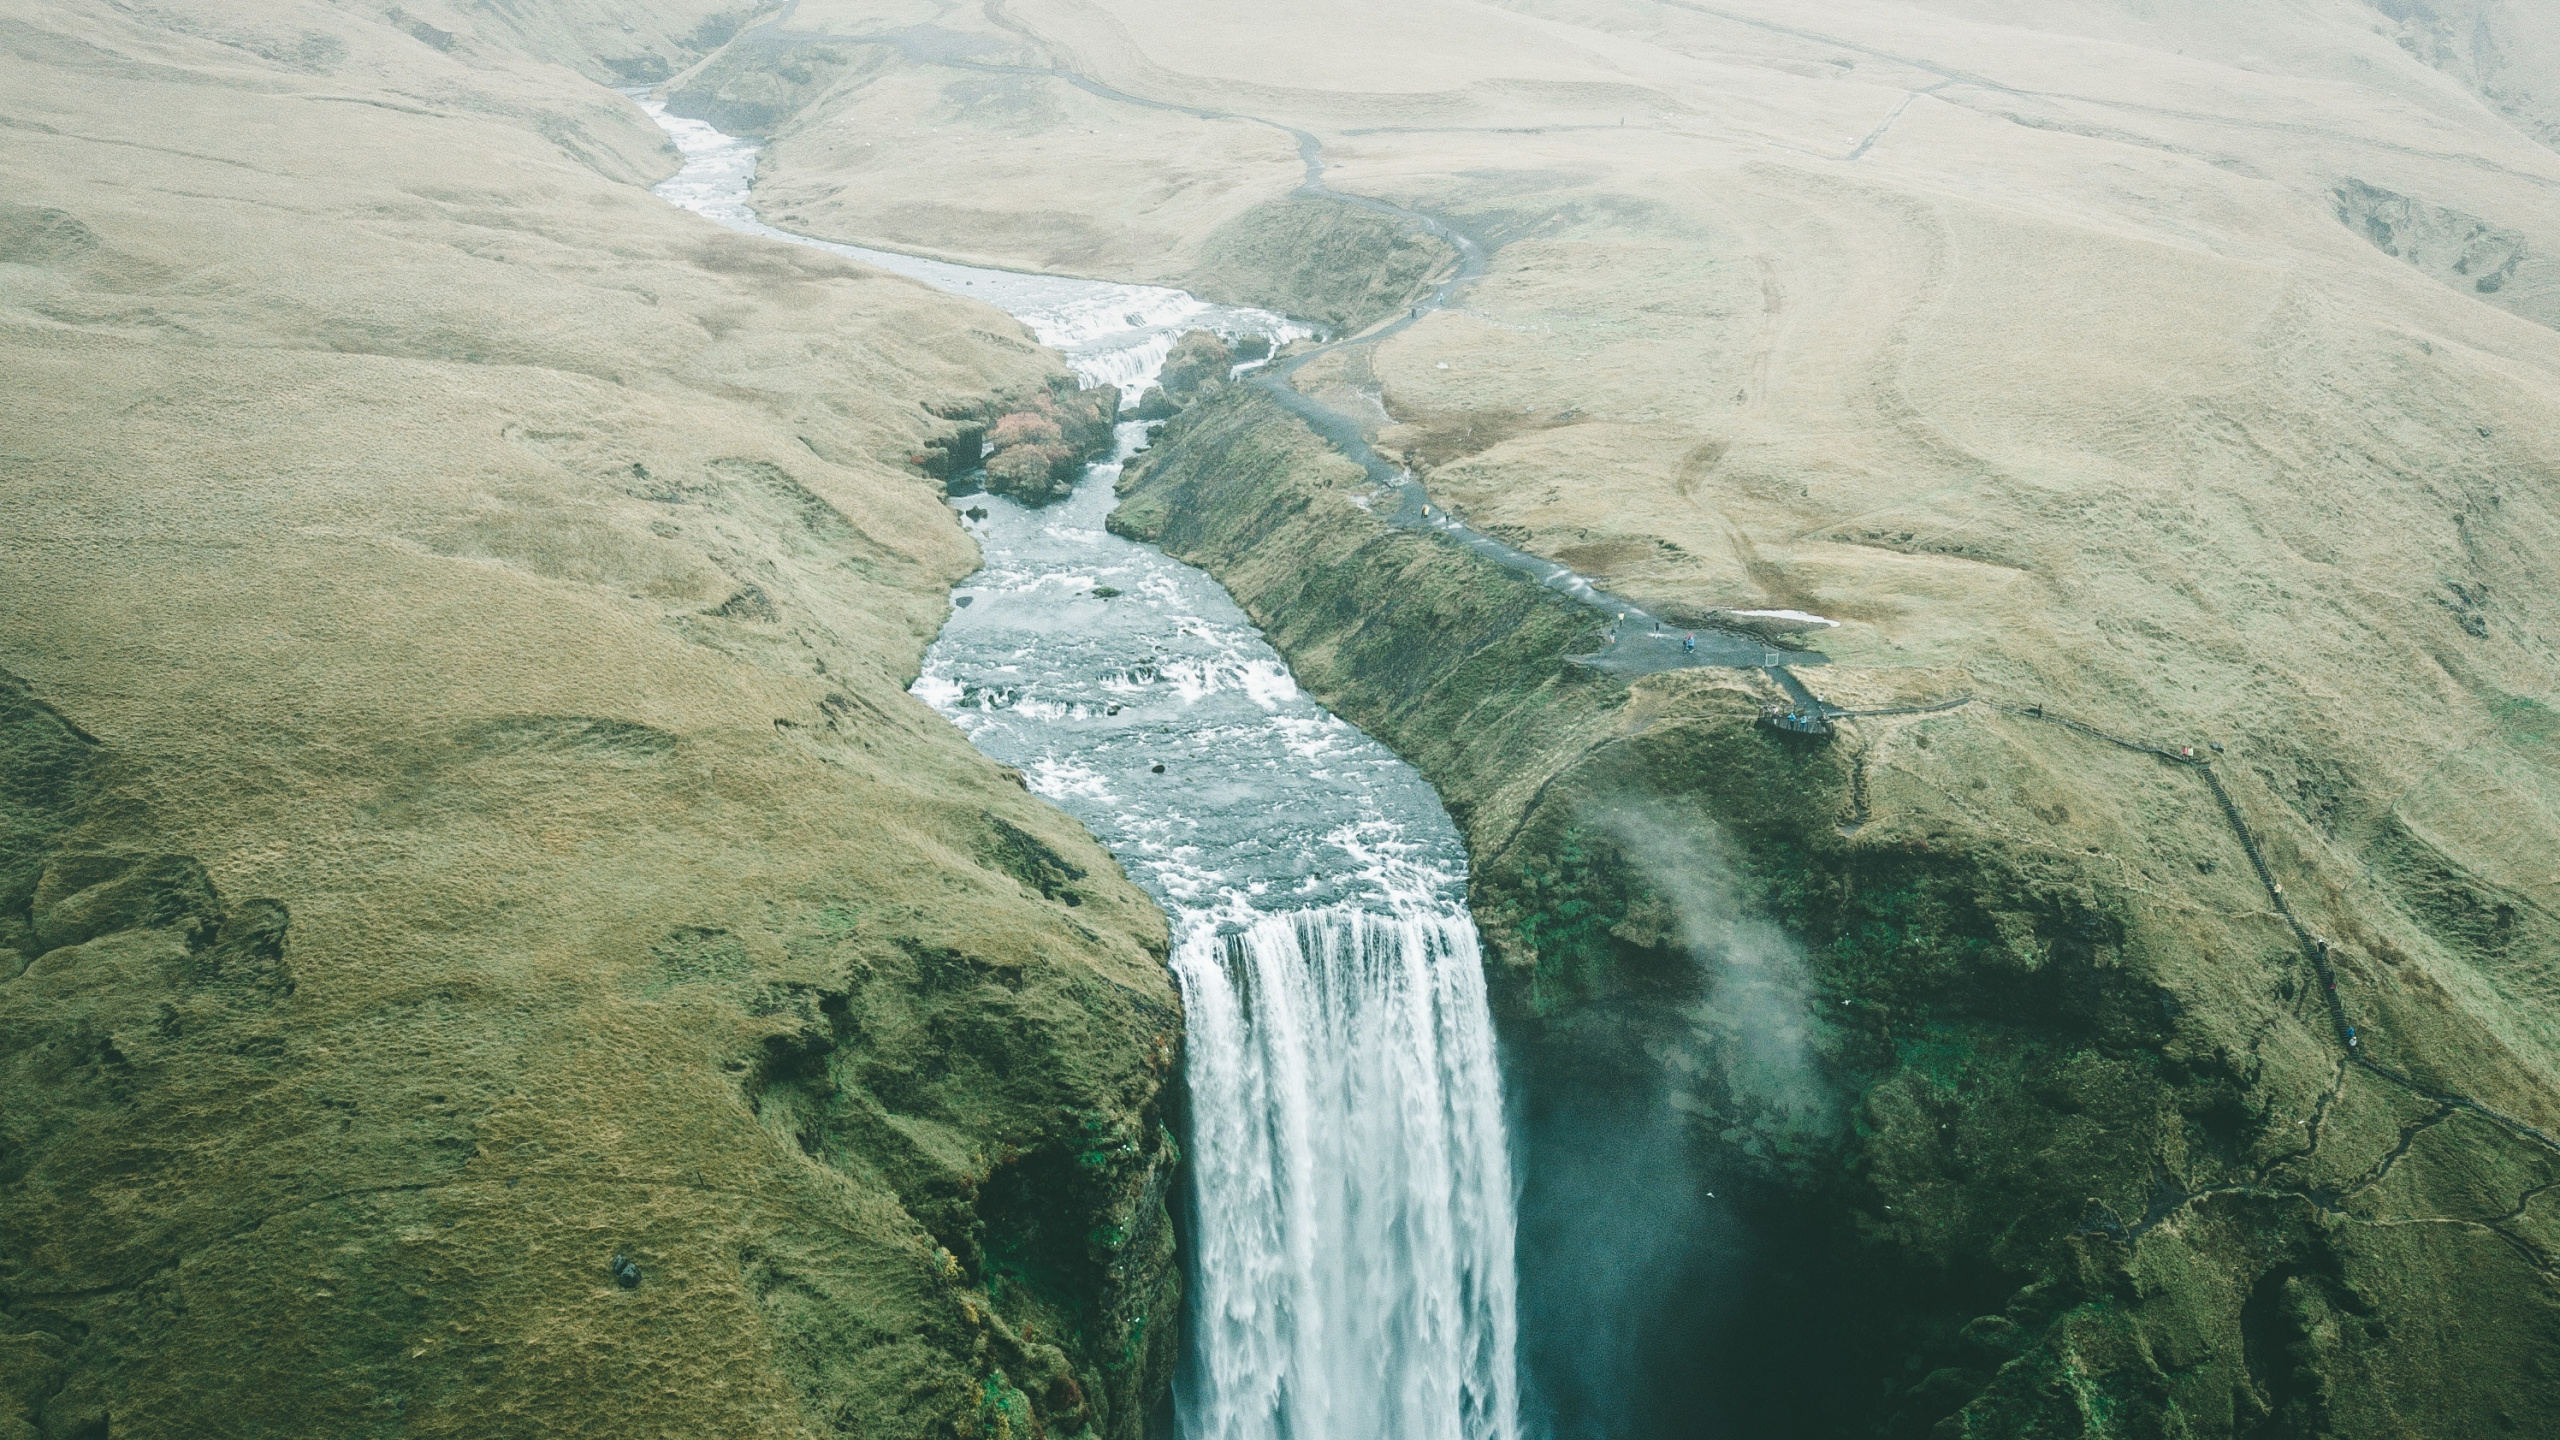 Wasserfall, Natur, Wasserressourcen, Gewässer, Wasser. Wallpaper in 2560x1440 Resolution